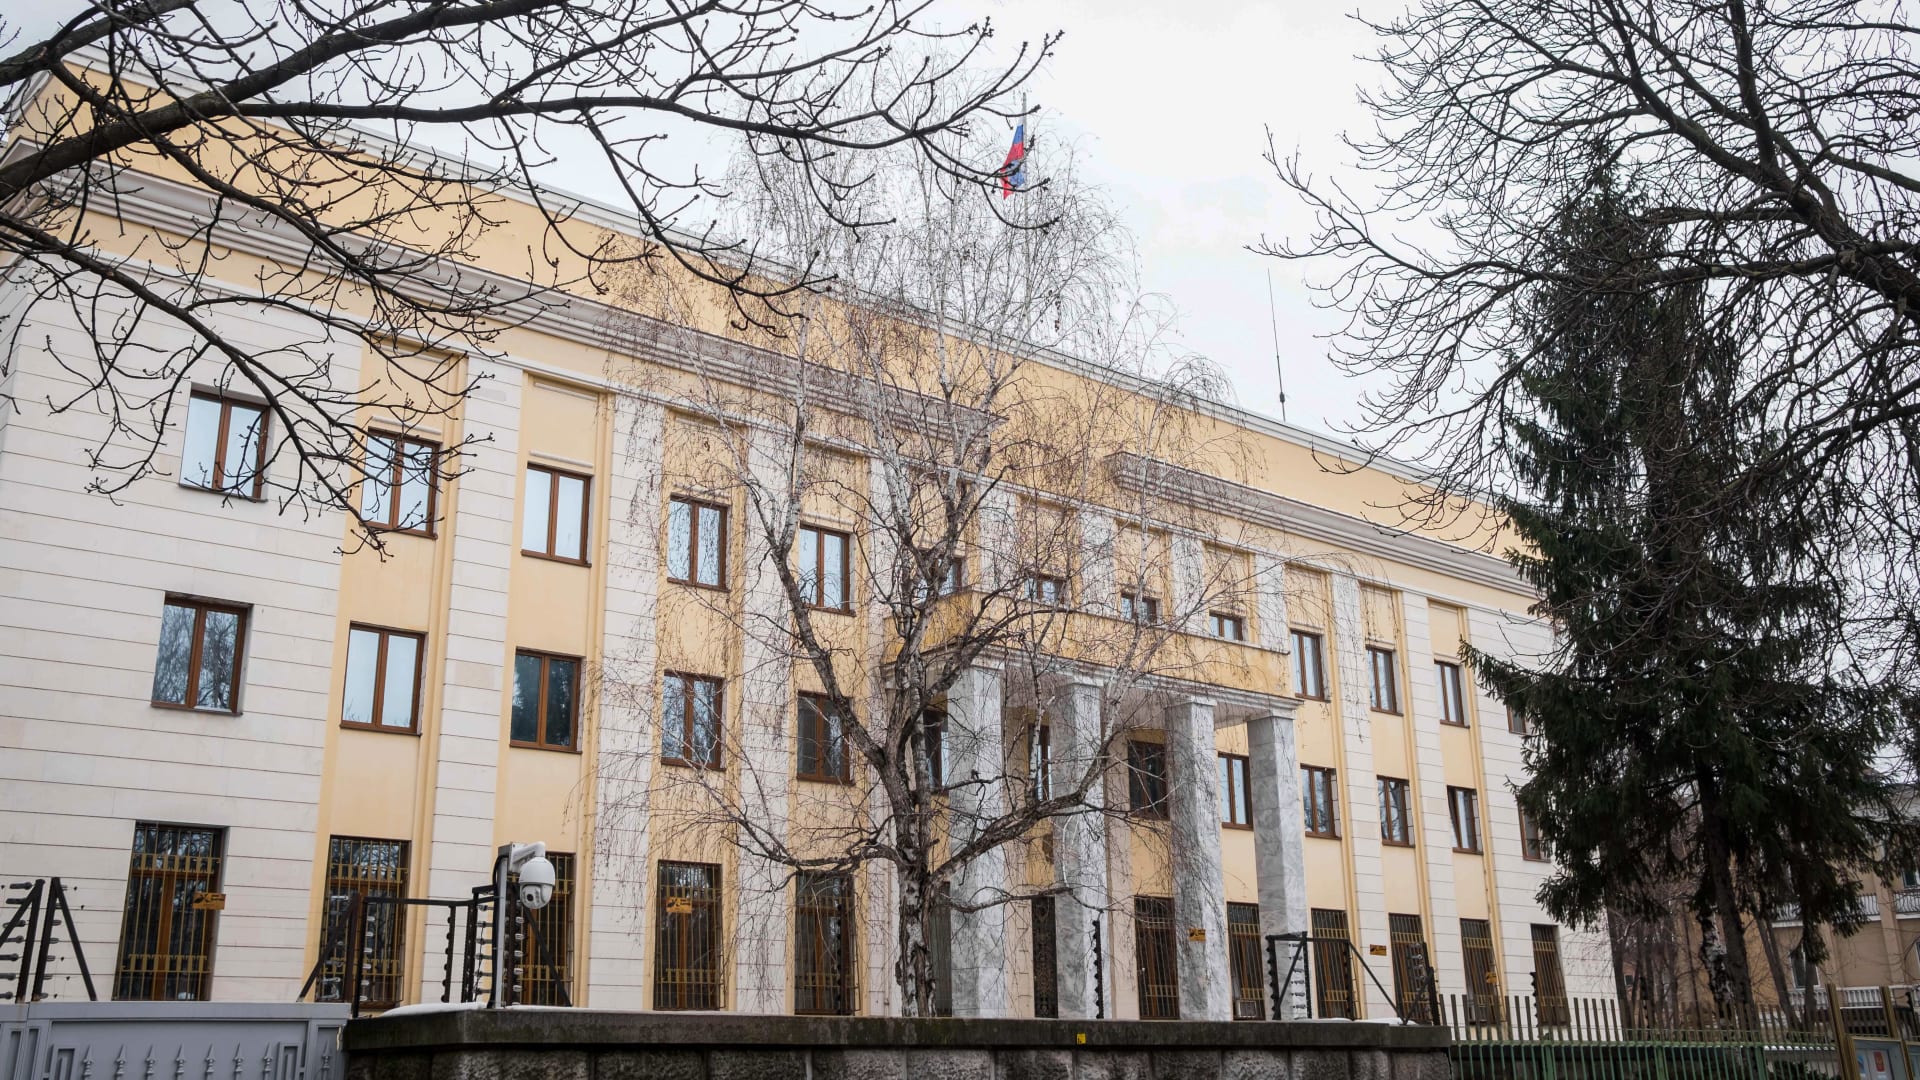 روسيا تعلن اصطدام سيارة بسفارتها في رومانيا واندلاع النيران فيها